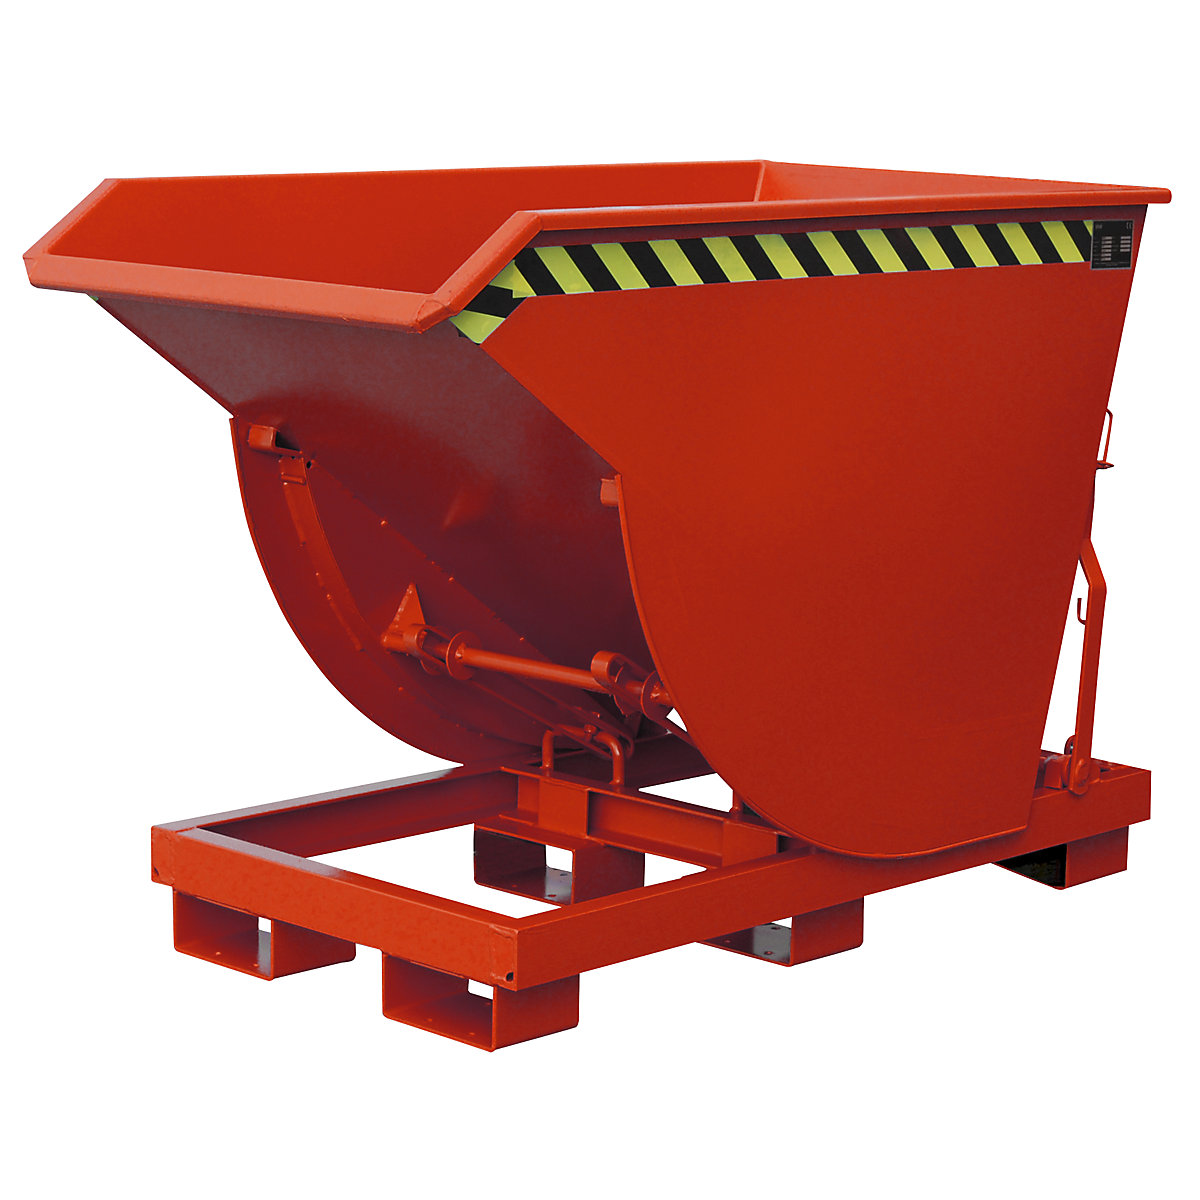 EUROKRAFTpro Kippbehälter, schmale Ausführung, Volumen 0,5 m³, Traglast 2500 kg, rot RAL 3000